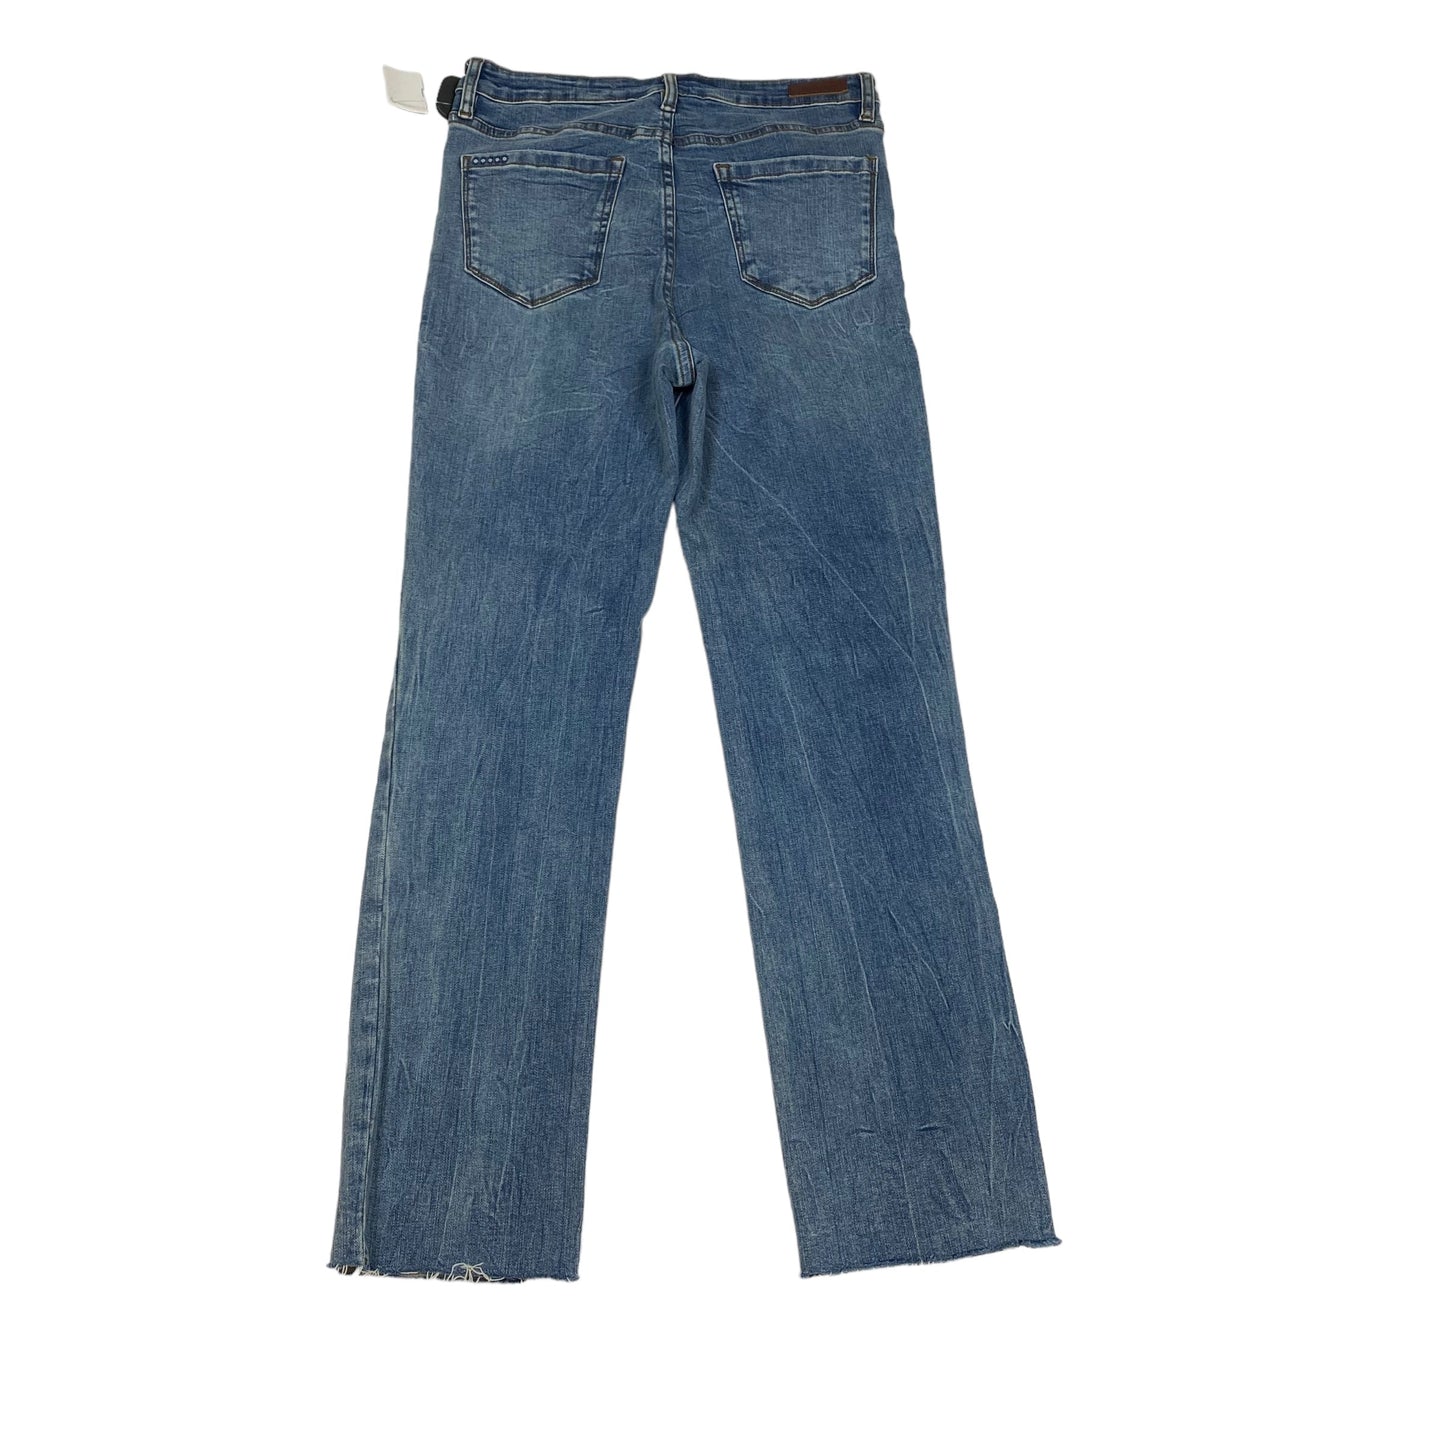 Blue Denim Jeans Skinny Blanknyc, Size 6